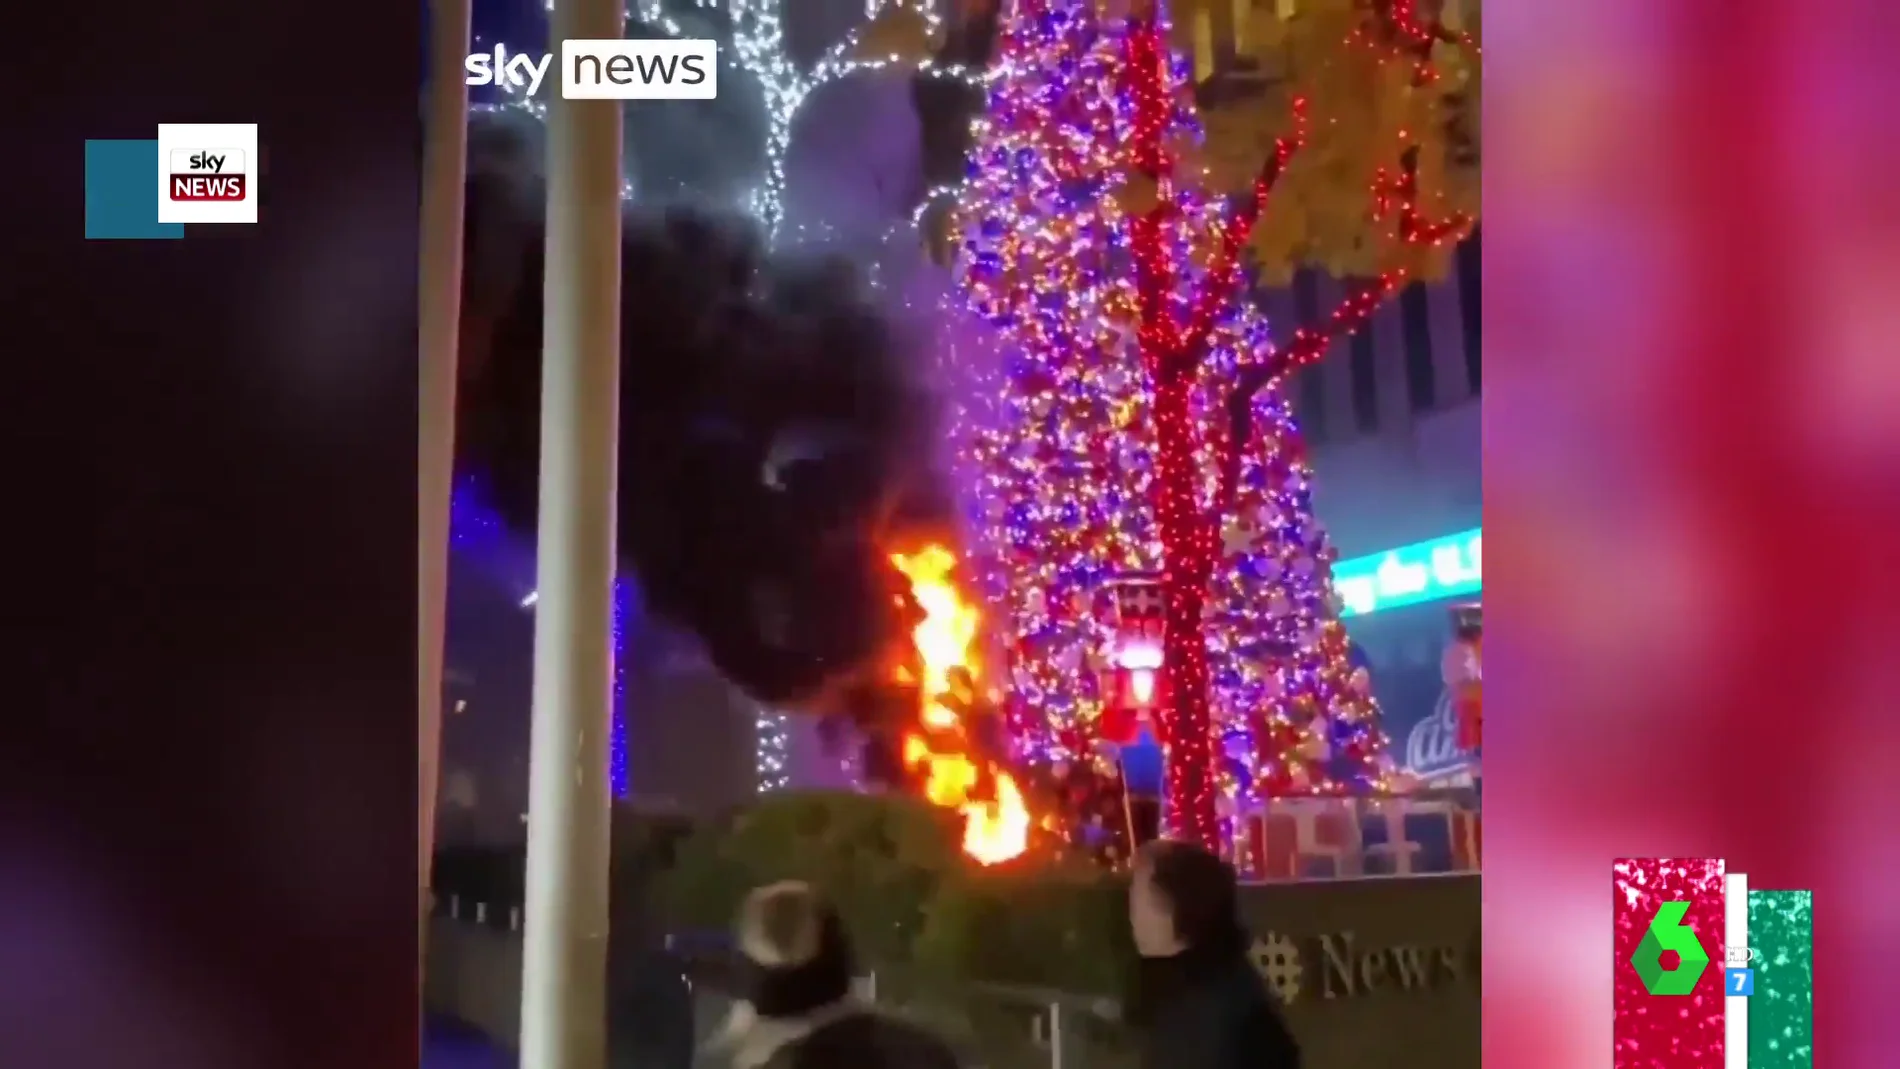 Prenden fuego a un enorme árbol de Navidad instalado en pleno centro de Nueva York